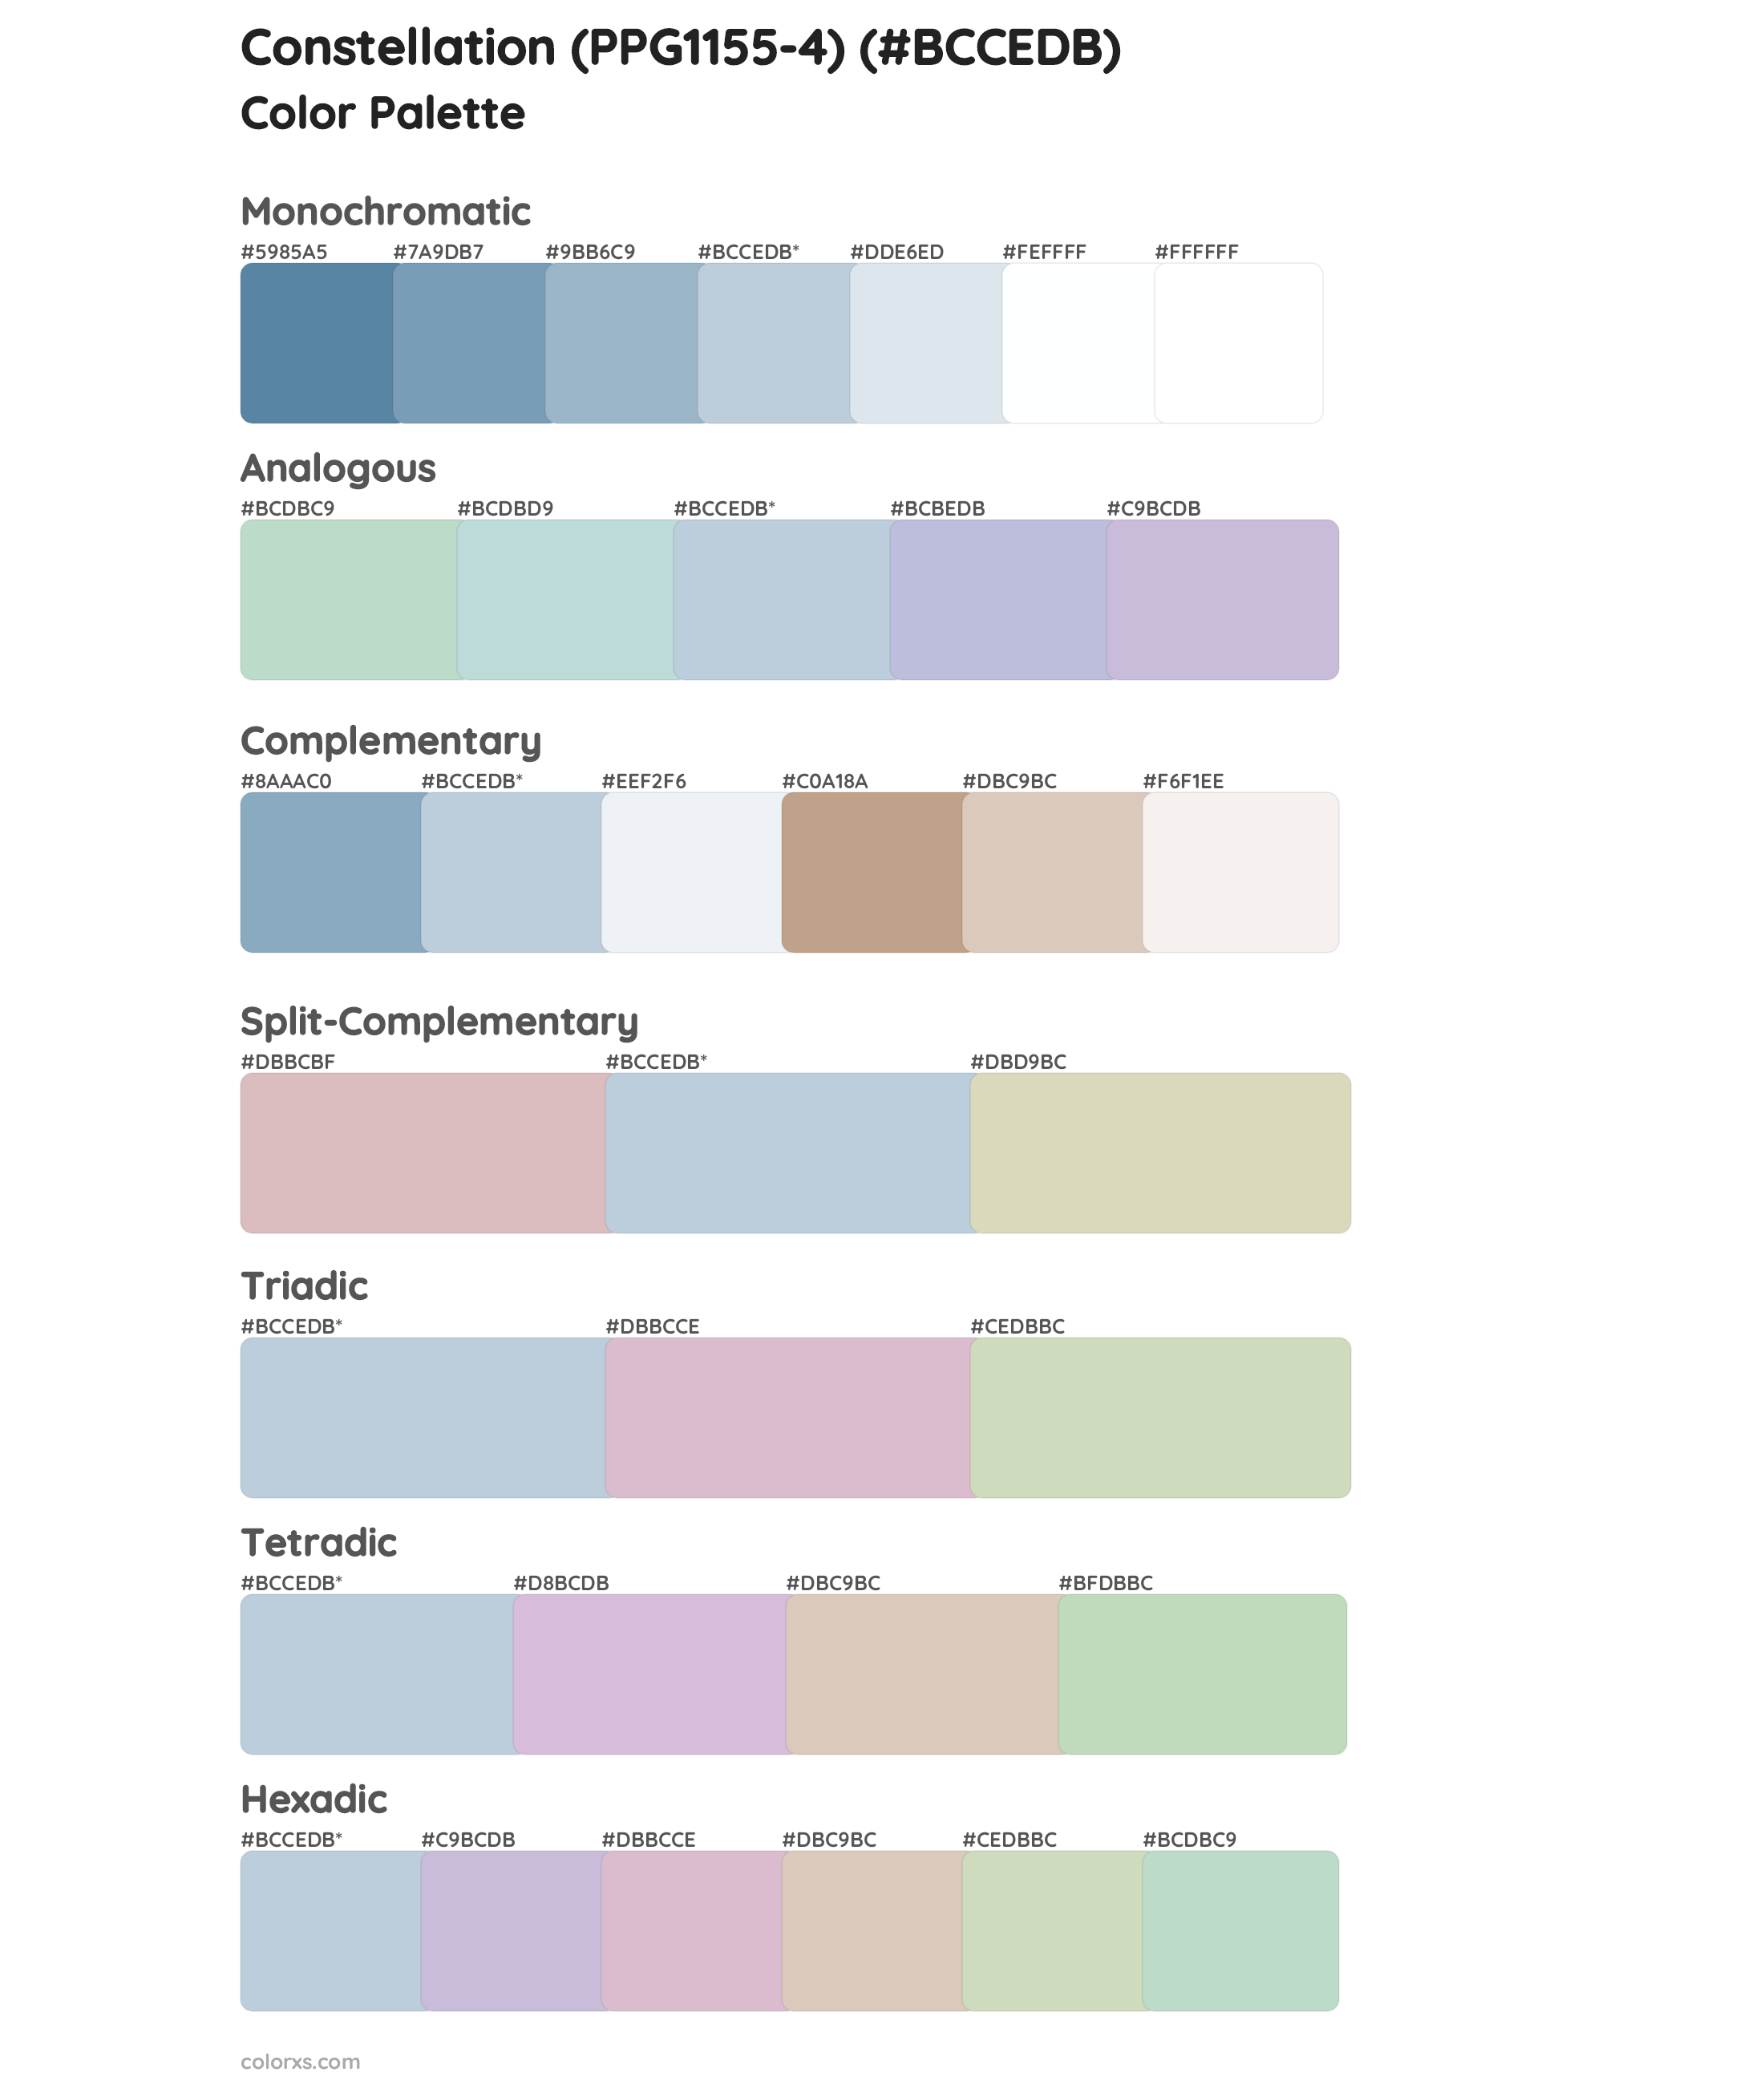 Constellation (PPG1155-4) Color Scheme Palettes